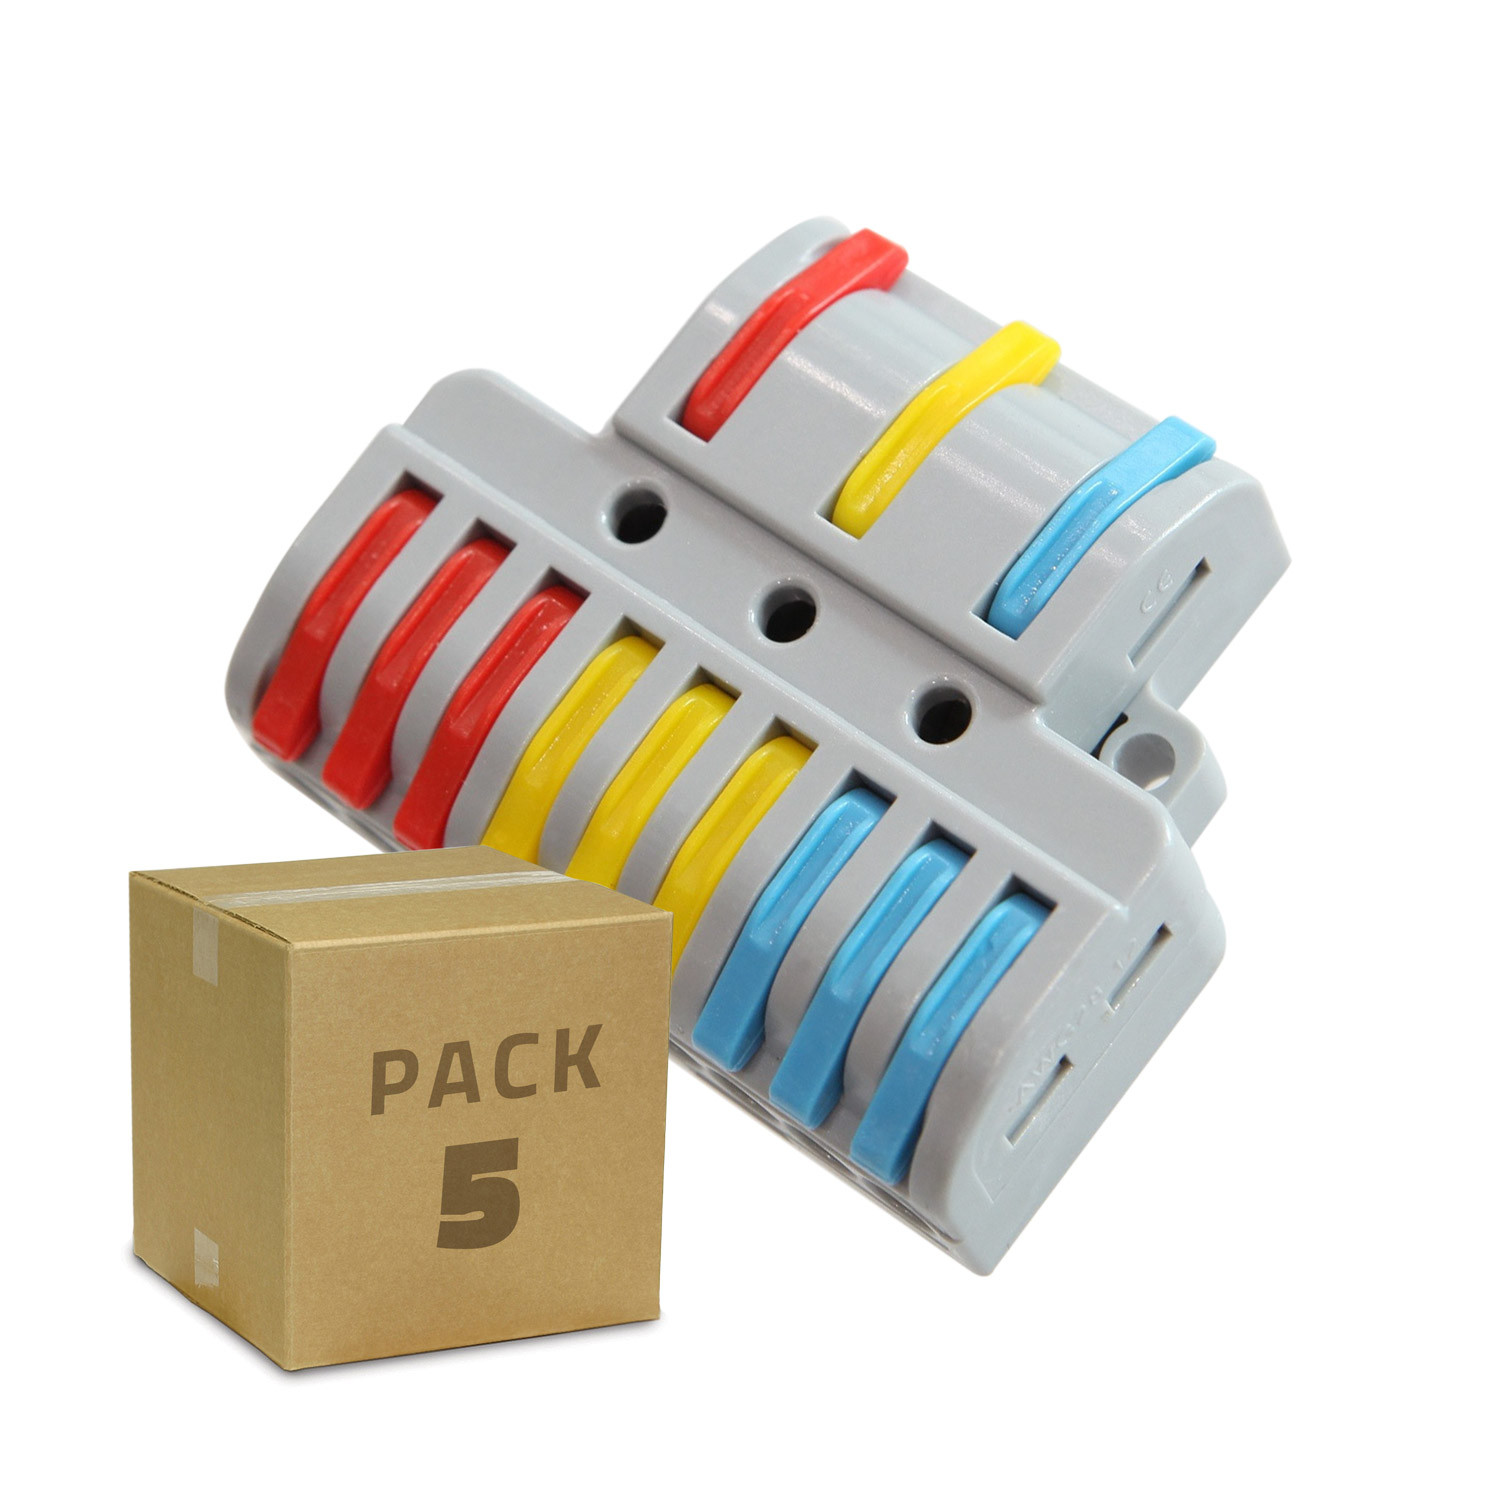 Produto de Pack 5 Conectores Rápido de 9 Entradas e 3 Saídas SPL-93 para Cabos Eléctricos de 0,08-4mm² 